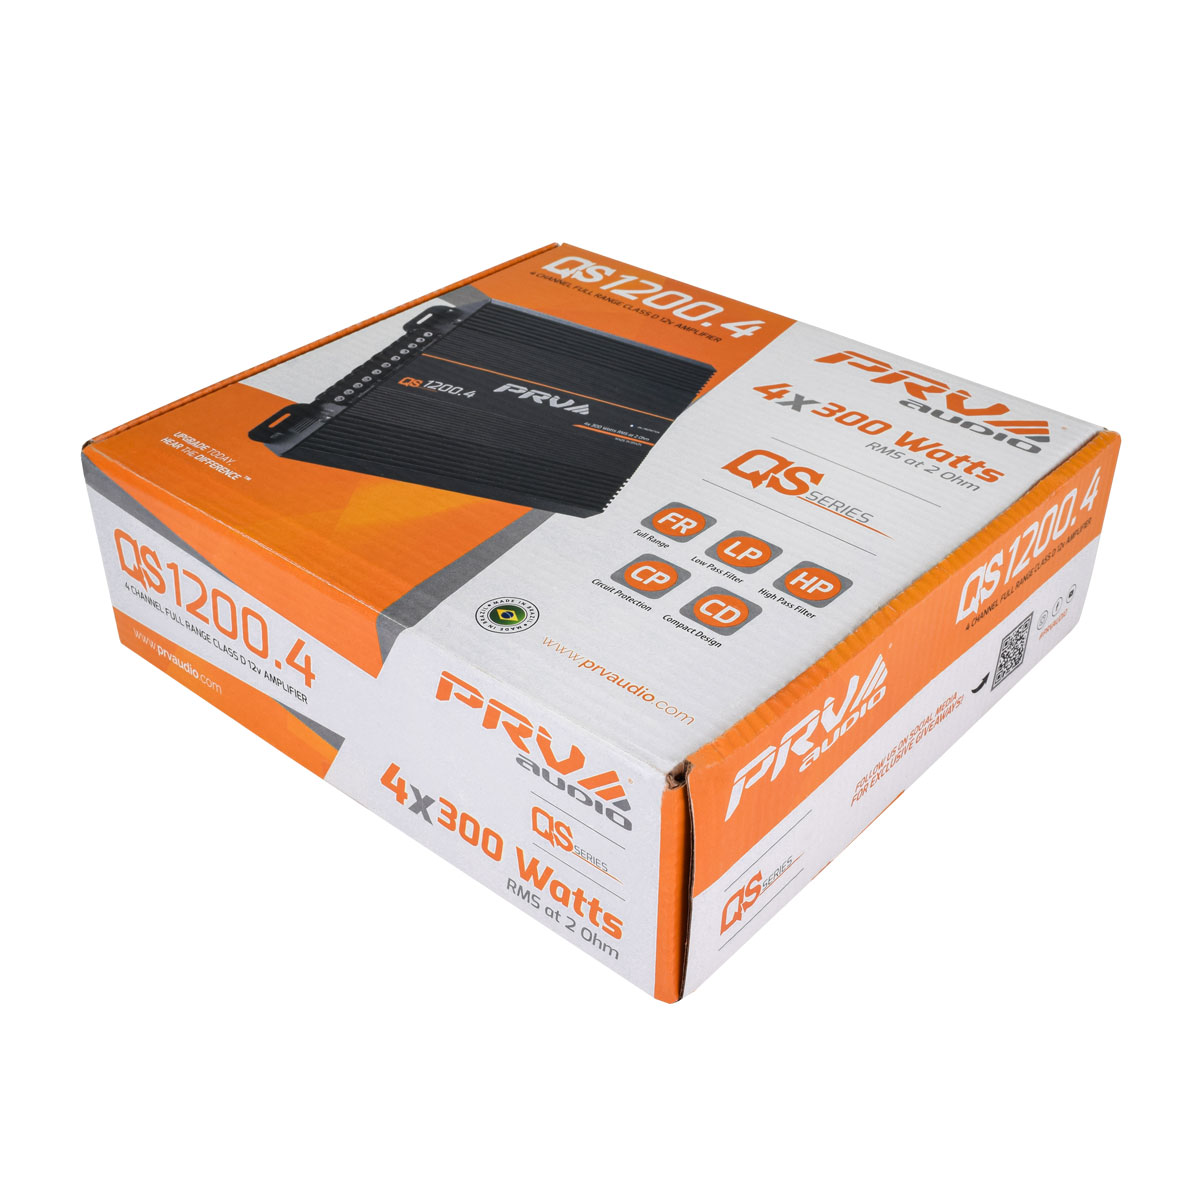 QS1200.4 2 Ohm - Product Box